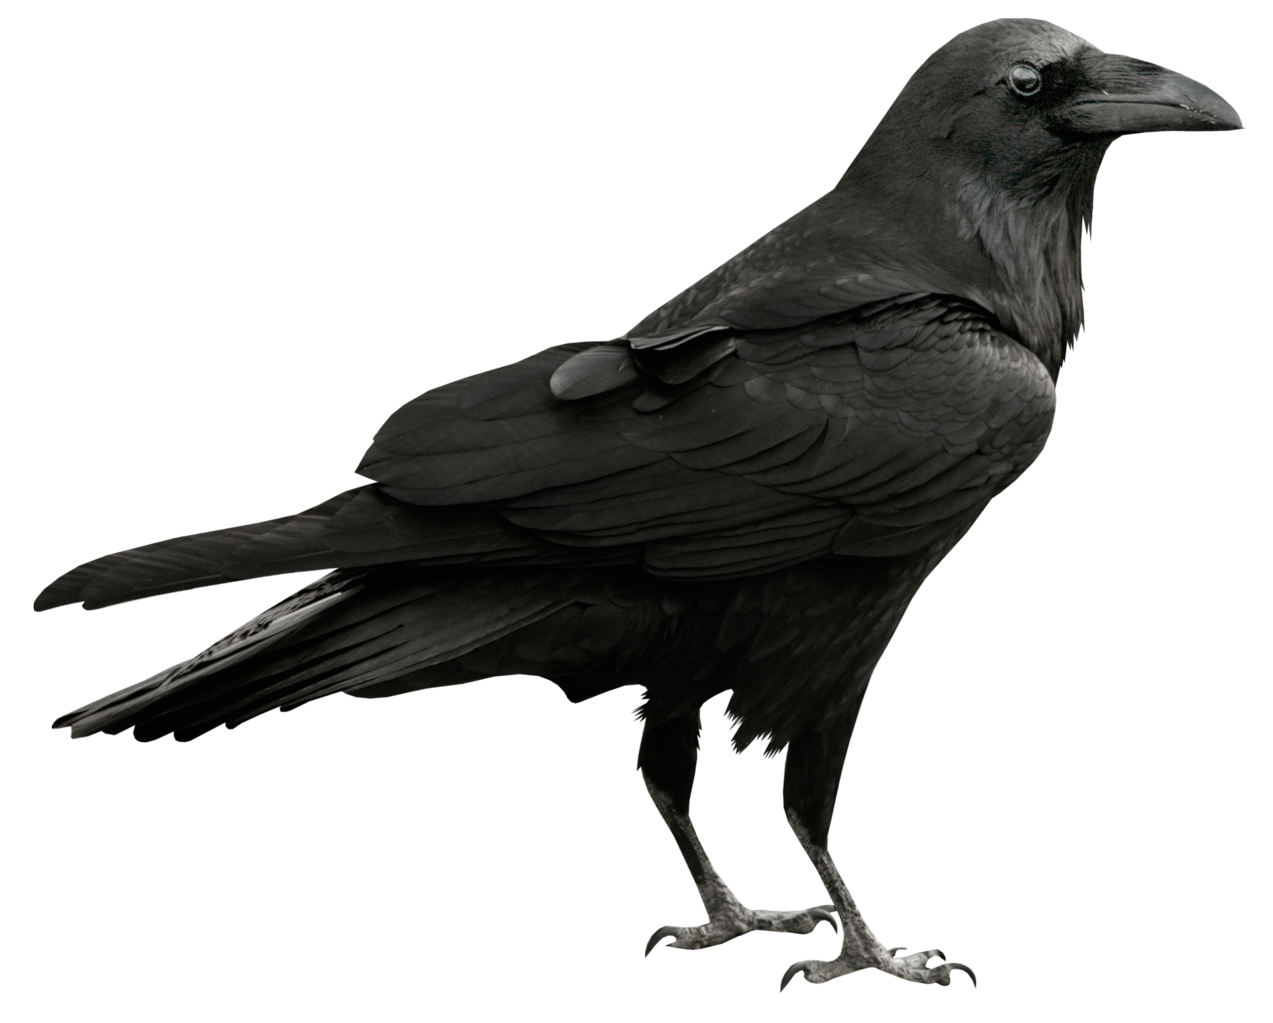 Raven Transparent PNG Image